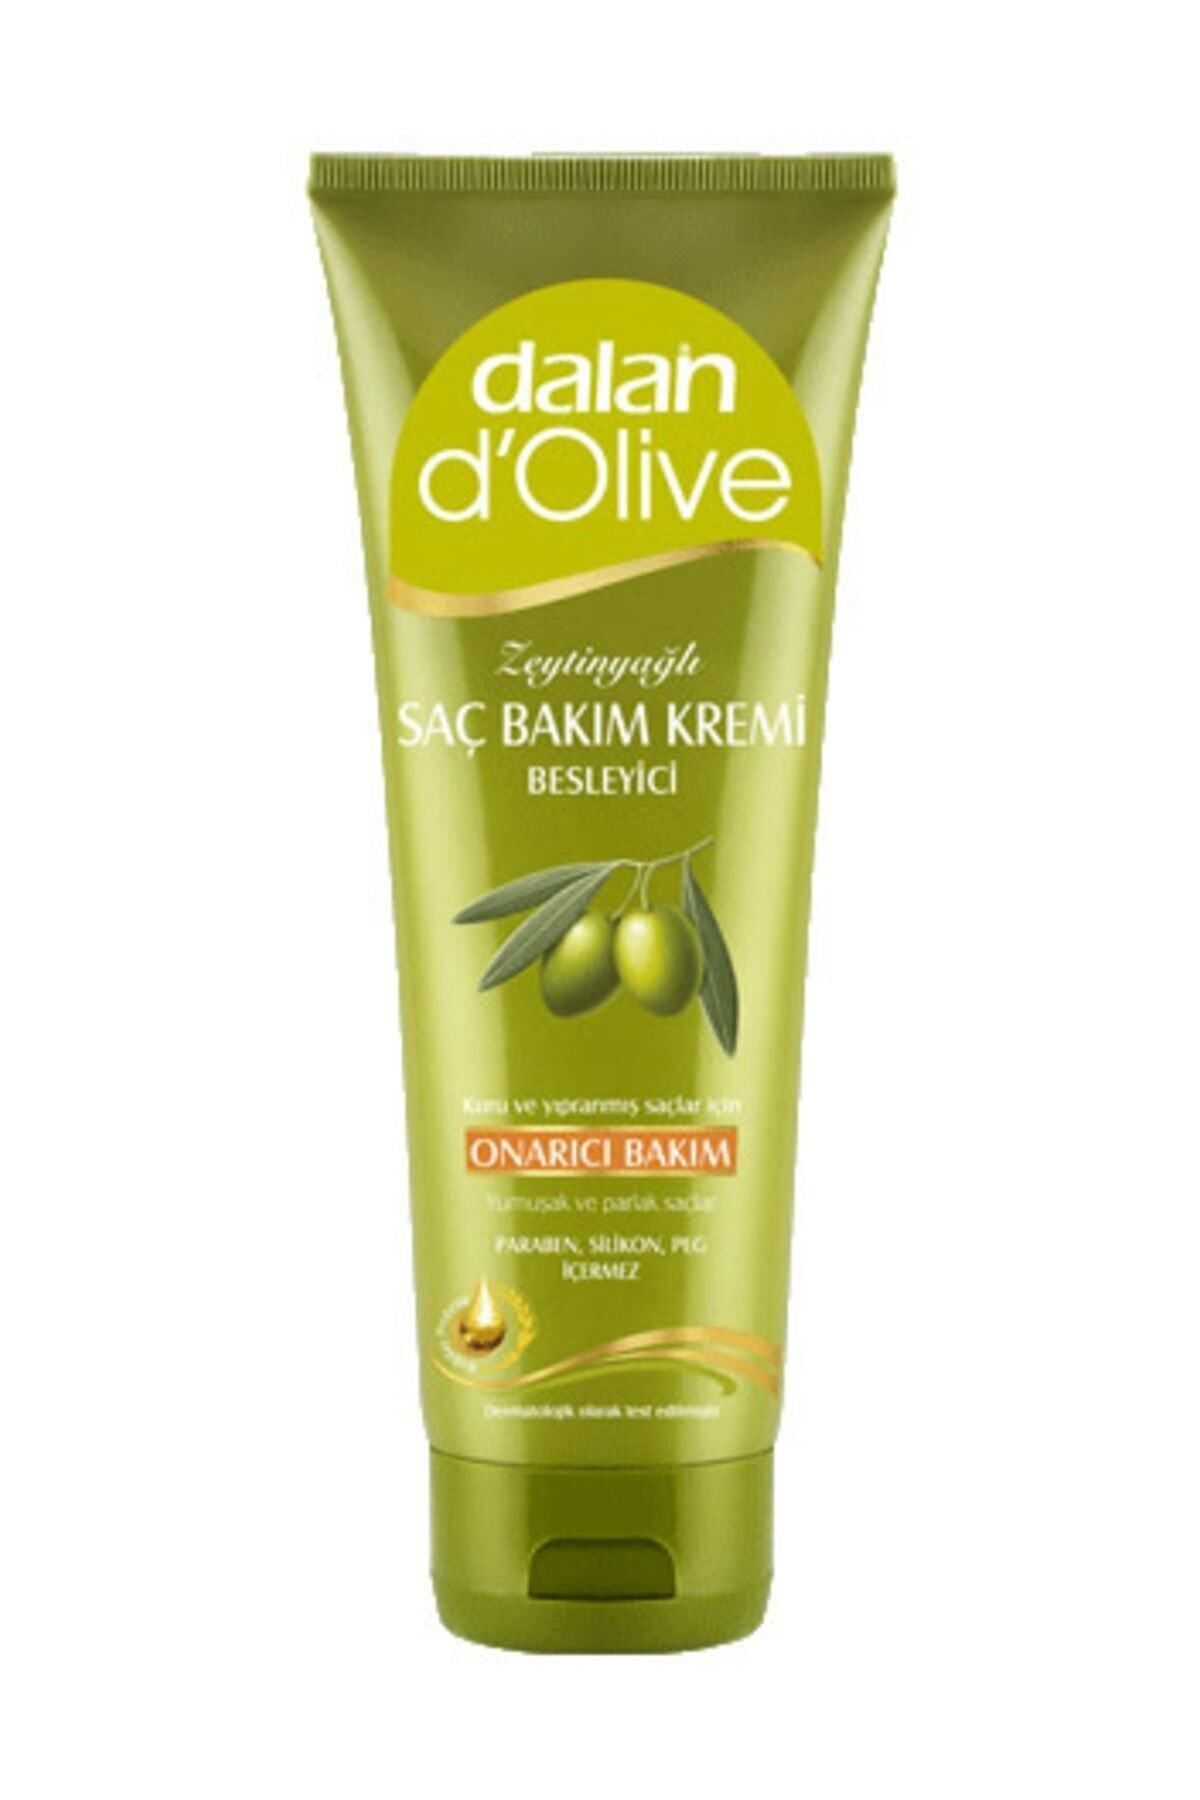 Dalan D'olive Zeytinyağlı Onarıcı Bakım Saç Bakım Kremi 200ml